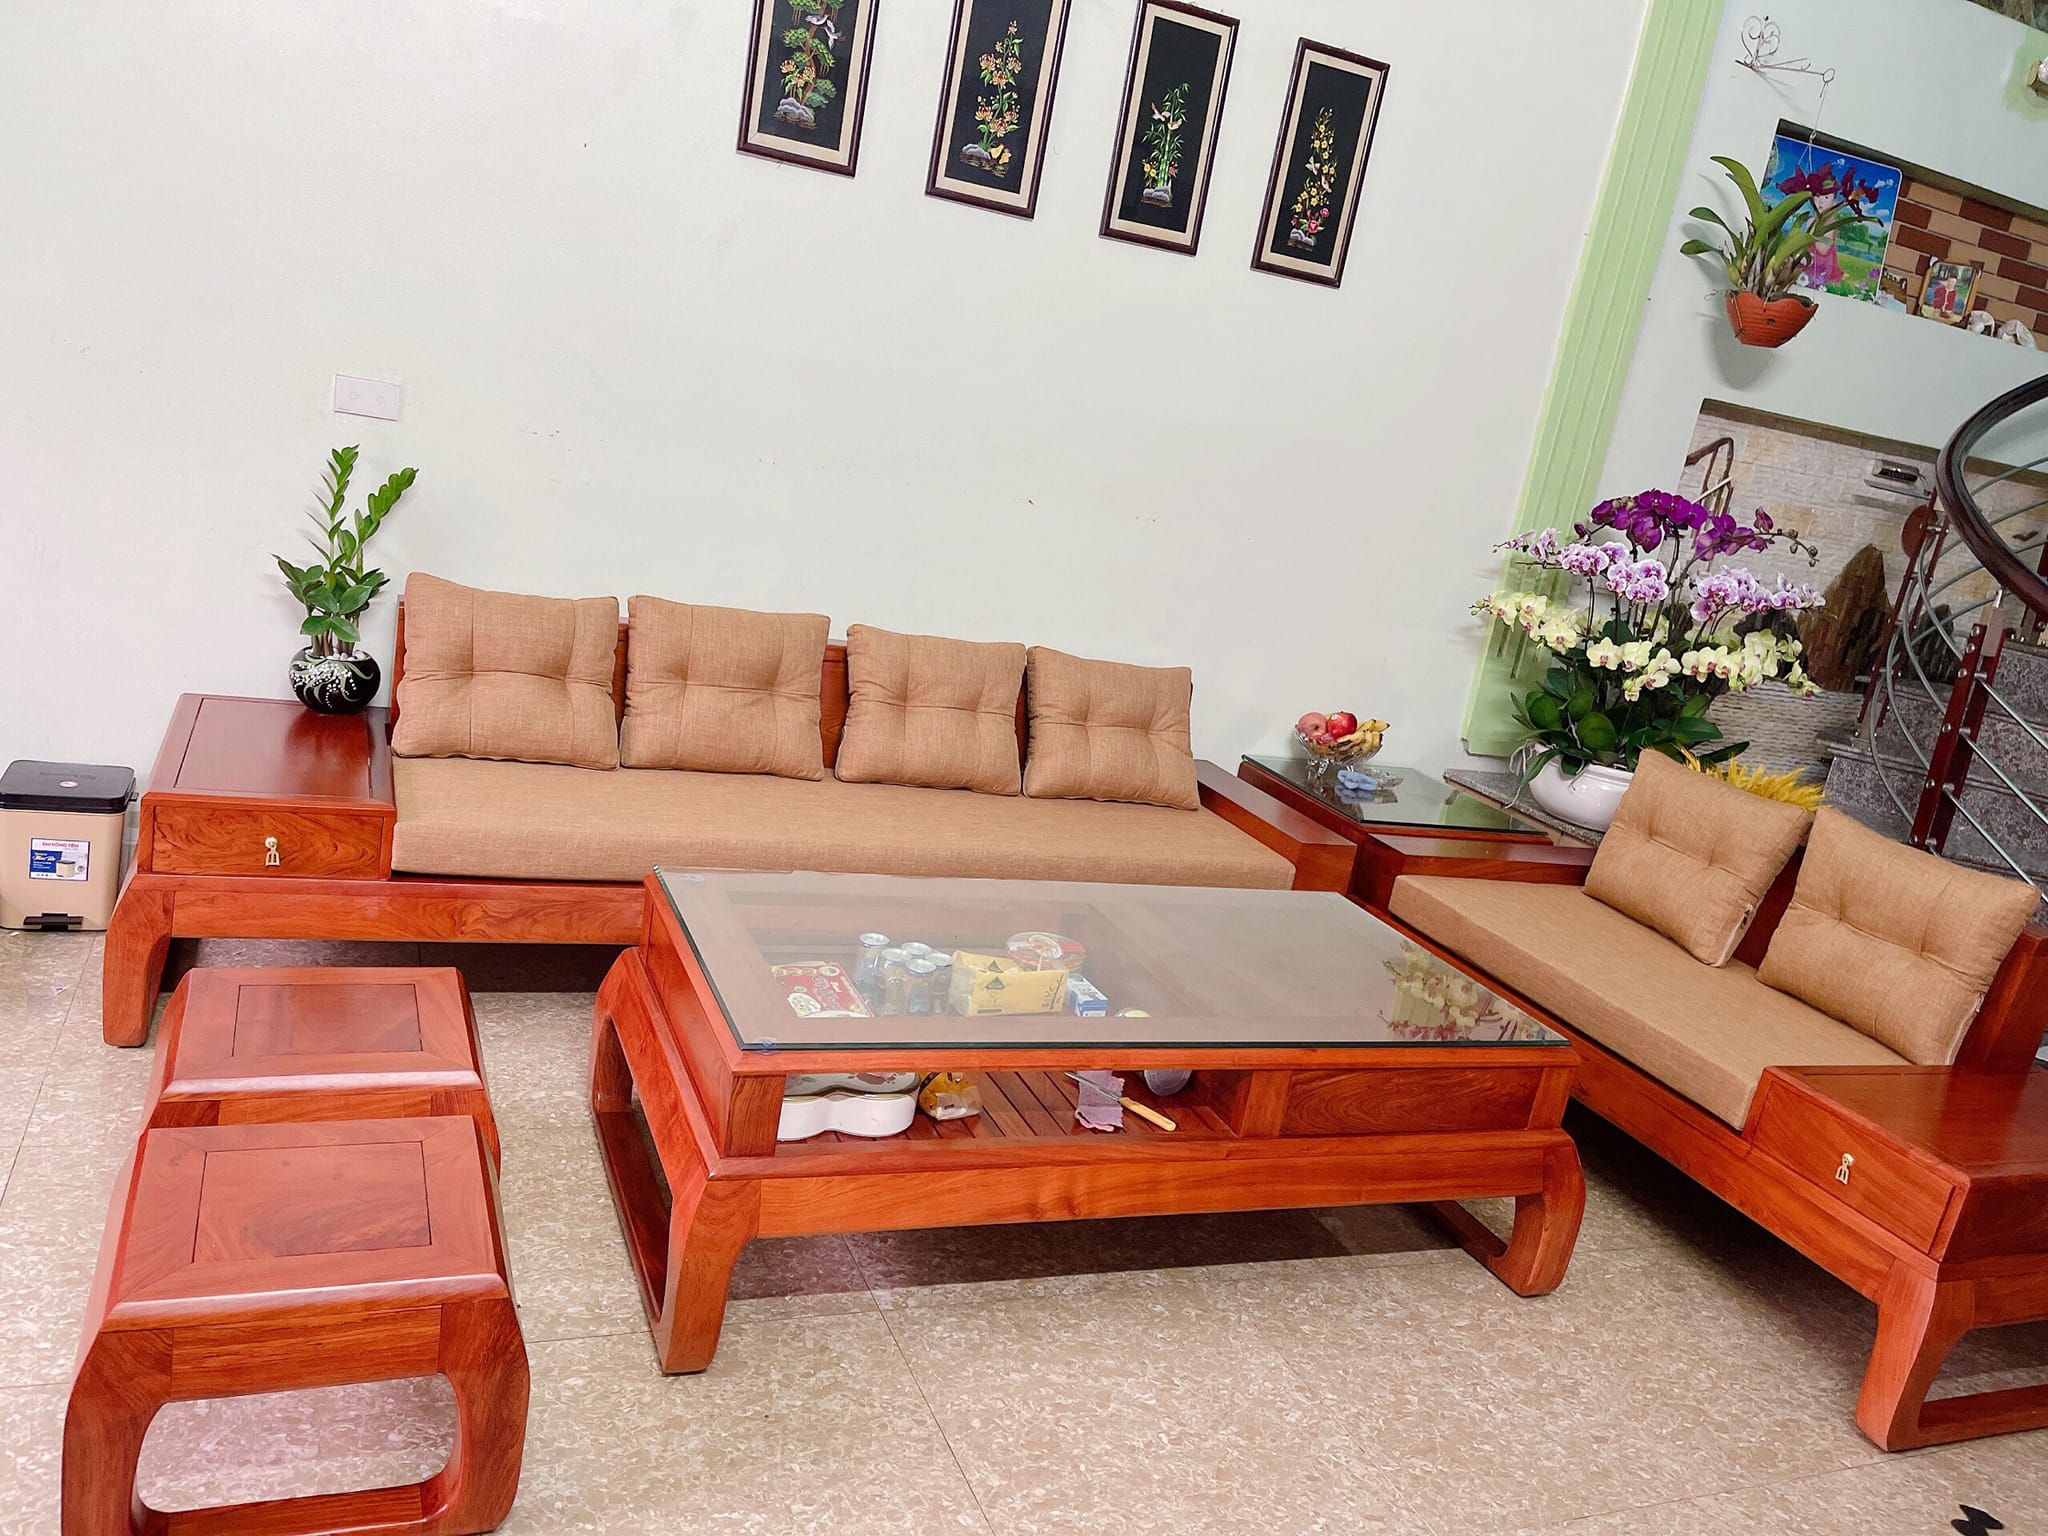 Mẫu sofa gỗ xoan đào dành cho phòng khách nhỏ 